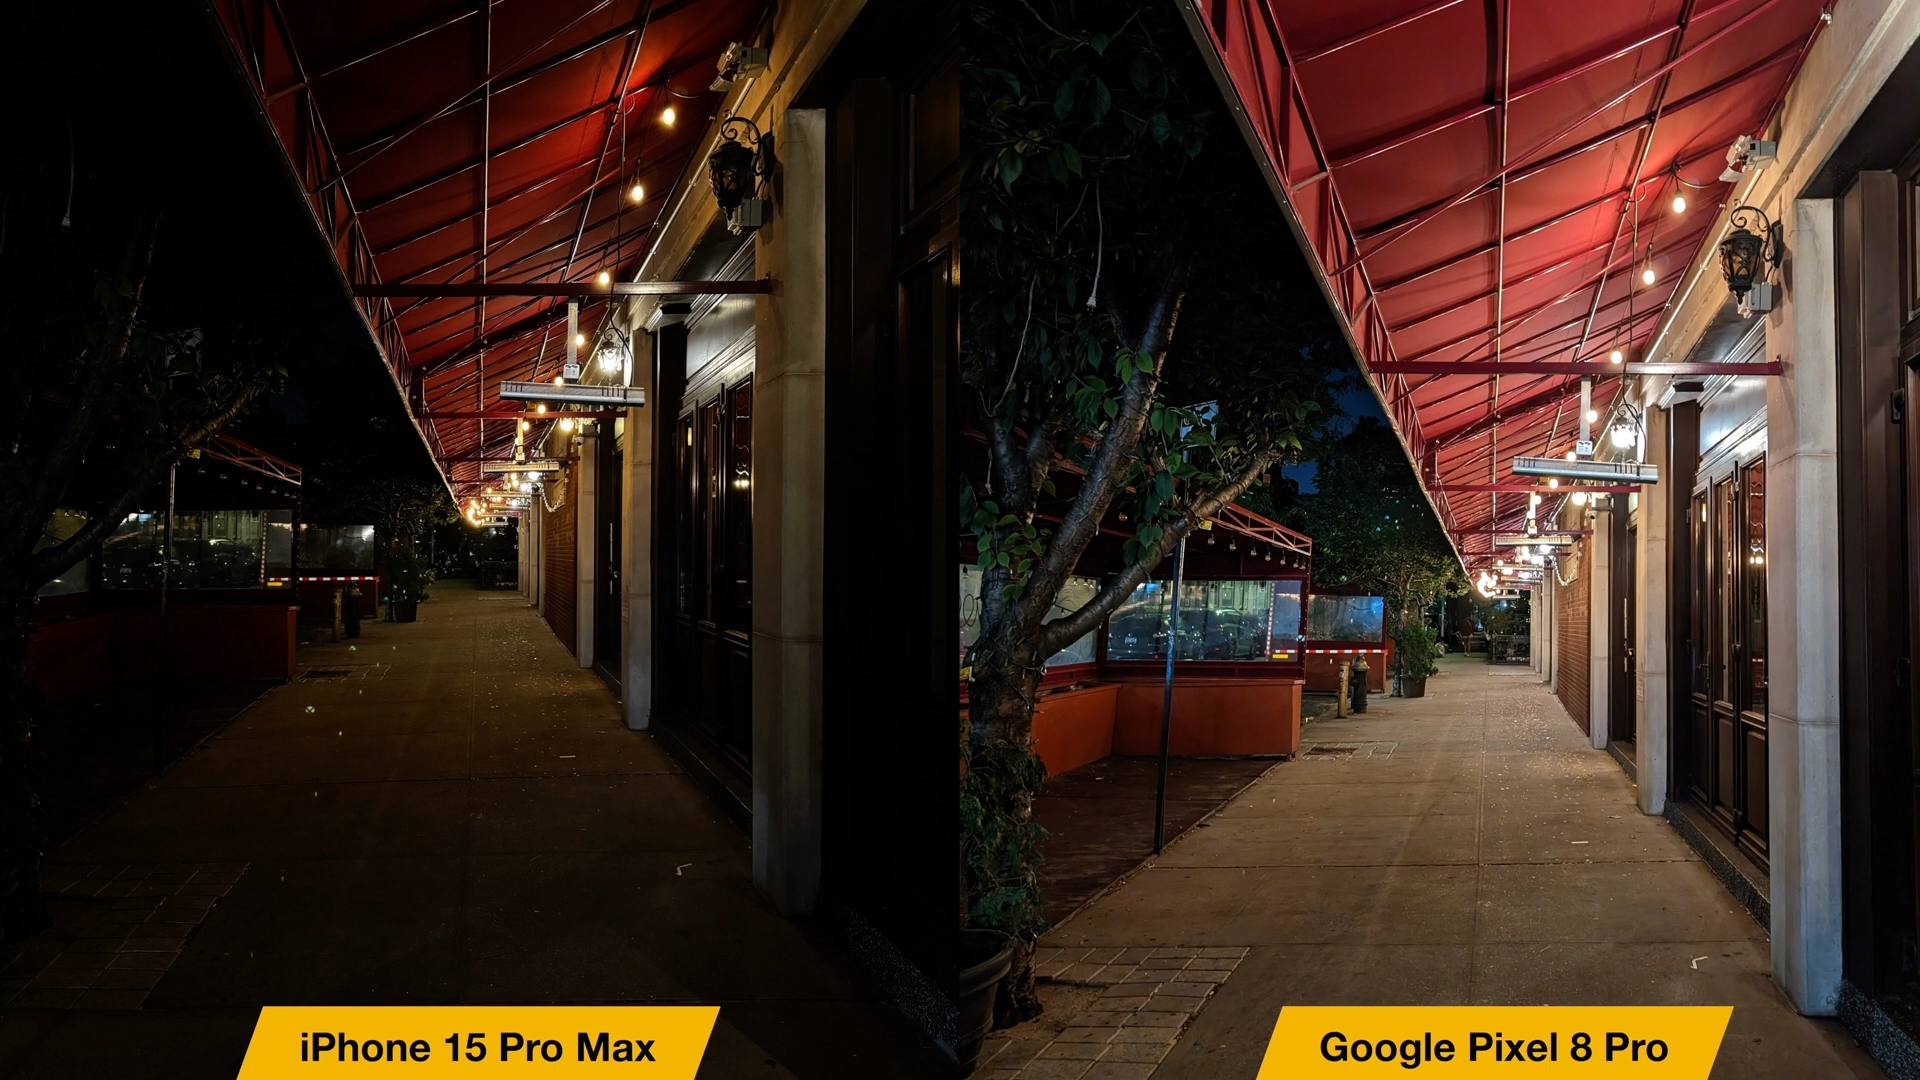 iPhoneIslam.com'dan, iki lambalı bir sokağın iki fotoğrafı, iPhone 15 Pro Max ile Google Pixel 8 Pro arasındaki karşılaştırma.